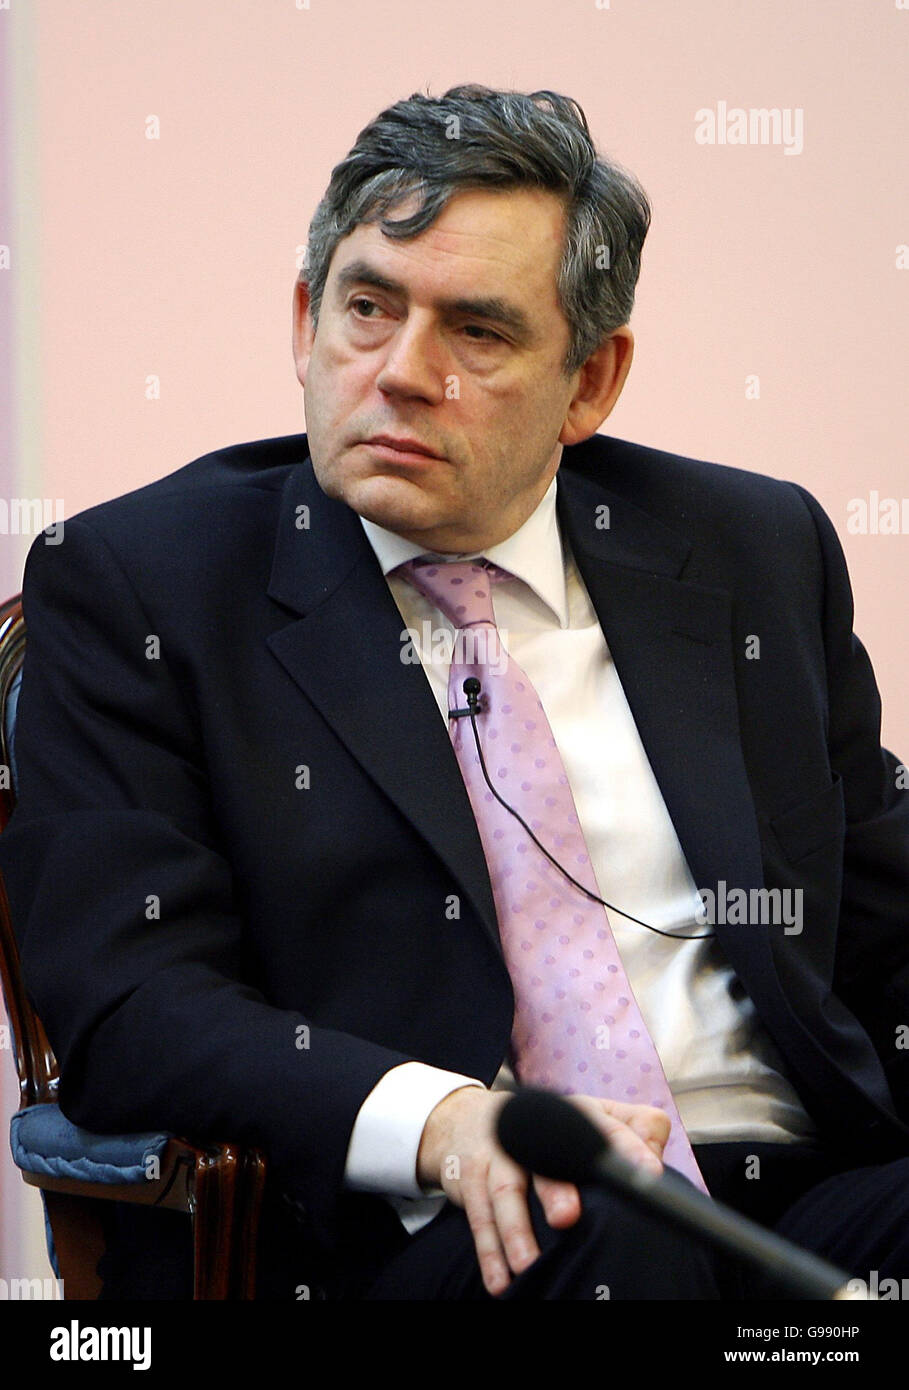 Il cancelliere britannico Gordon Brown alla Guildhall nel centro di Londra, mercoledì 28 marzo 2006. Dove l'ex presidente degli Stati Uniti Bill Clinton ha tenuto un discorso e ha detto che la globalizzazione e la crescente interdipendenza erano inevitabili e "il divorzio non era un'opzione". Clinton ha affermato che i cittadini di tutto il mondo devono essere persuasi che la globalizzazione potrebbe essere una forza per il bene. Egli ha detto che il mondo doveva passare dall'interdipendenza alla "comunità integrata", condividendo i benefici e le responsabilità della globalizzazione. Vedi PA Story POLITICS Clinton London. PREMERE ASSOCIAZIONE foto. Il credito fotografico dovrebbe essere: John D. Foto Stock